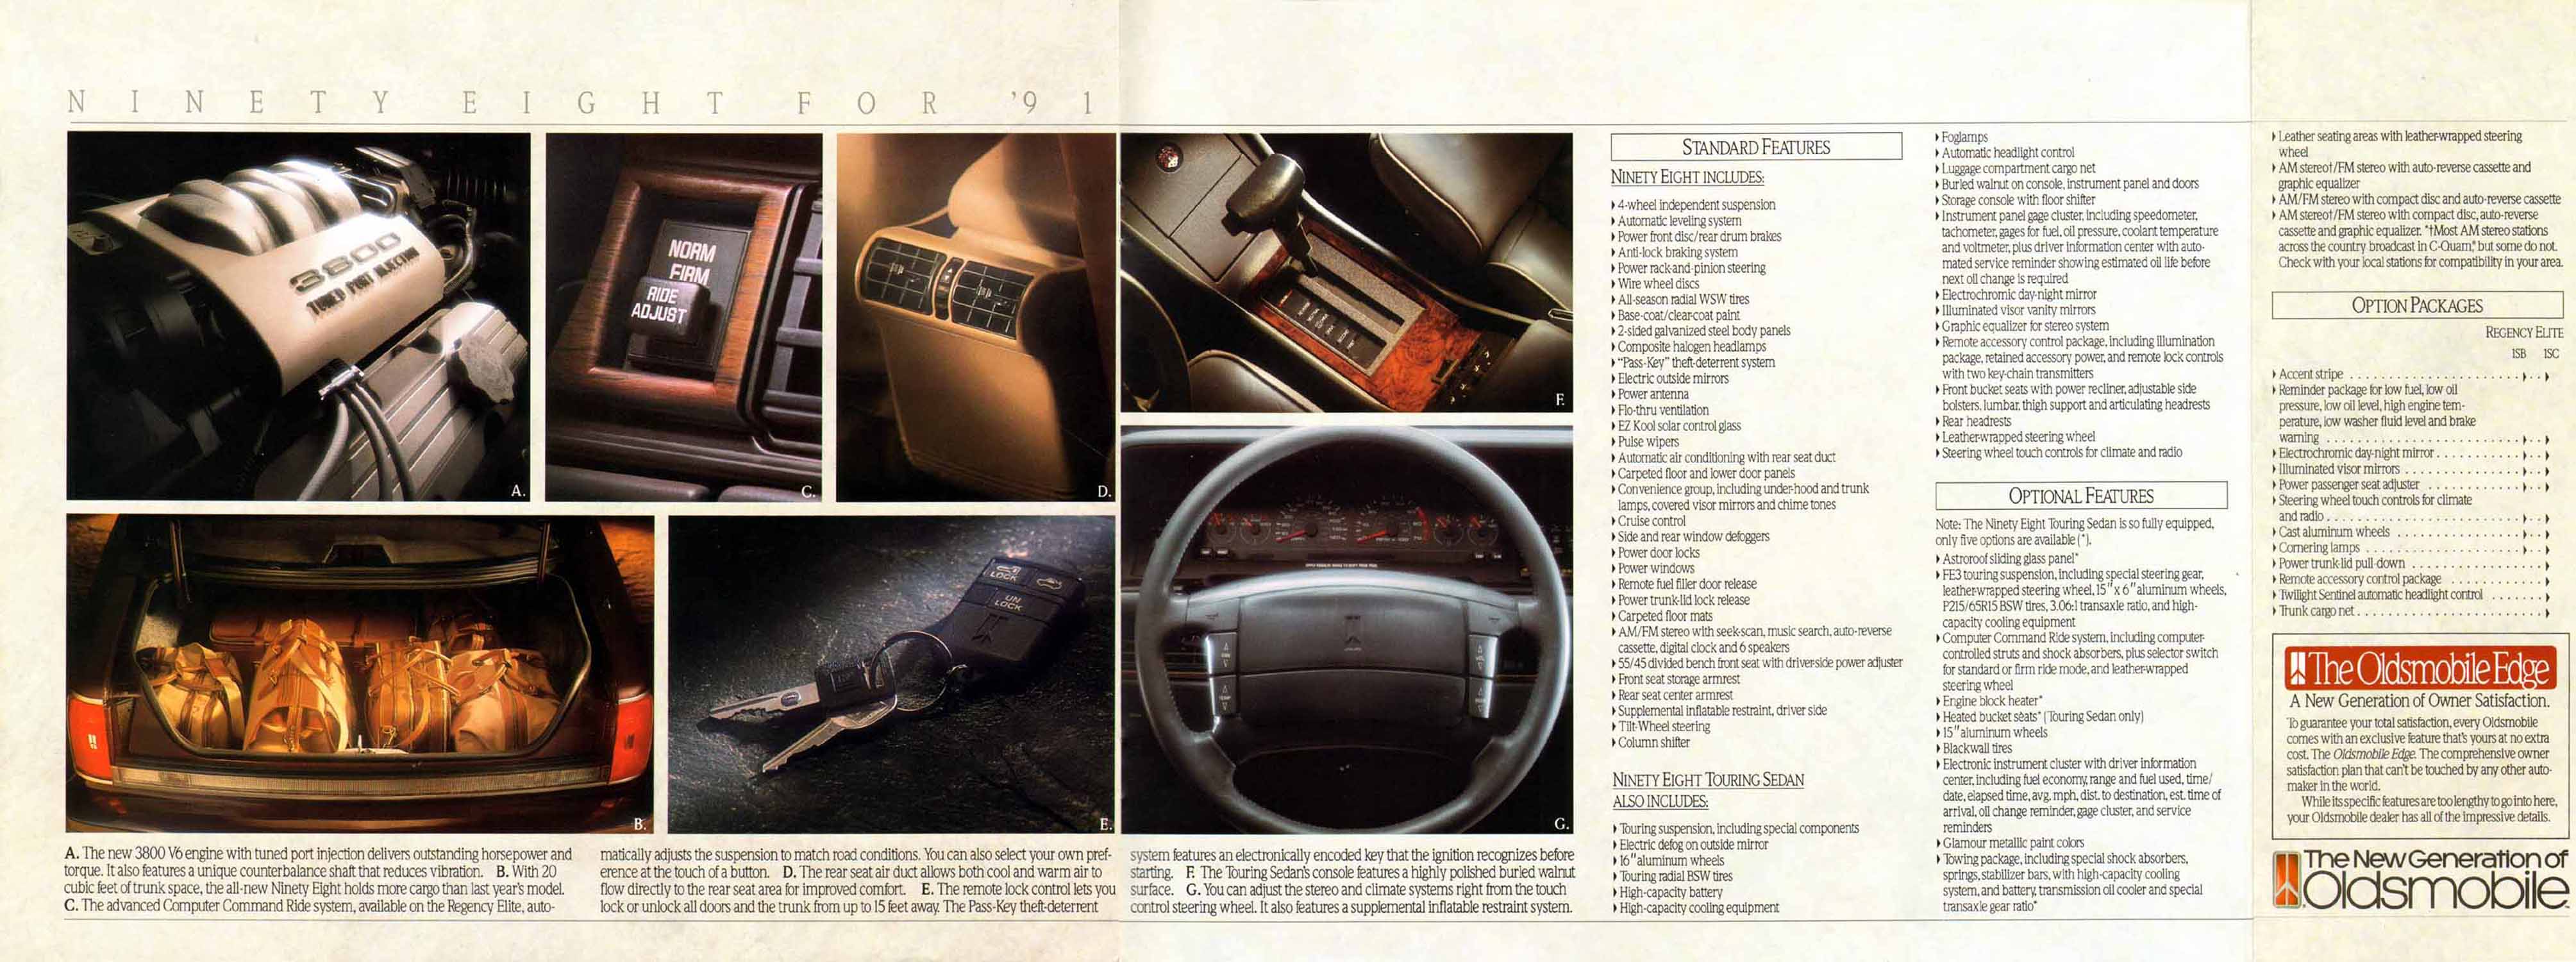 1991_Oldsmobile_Ninety_Eight-10-11-11b